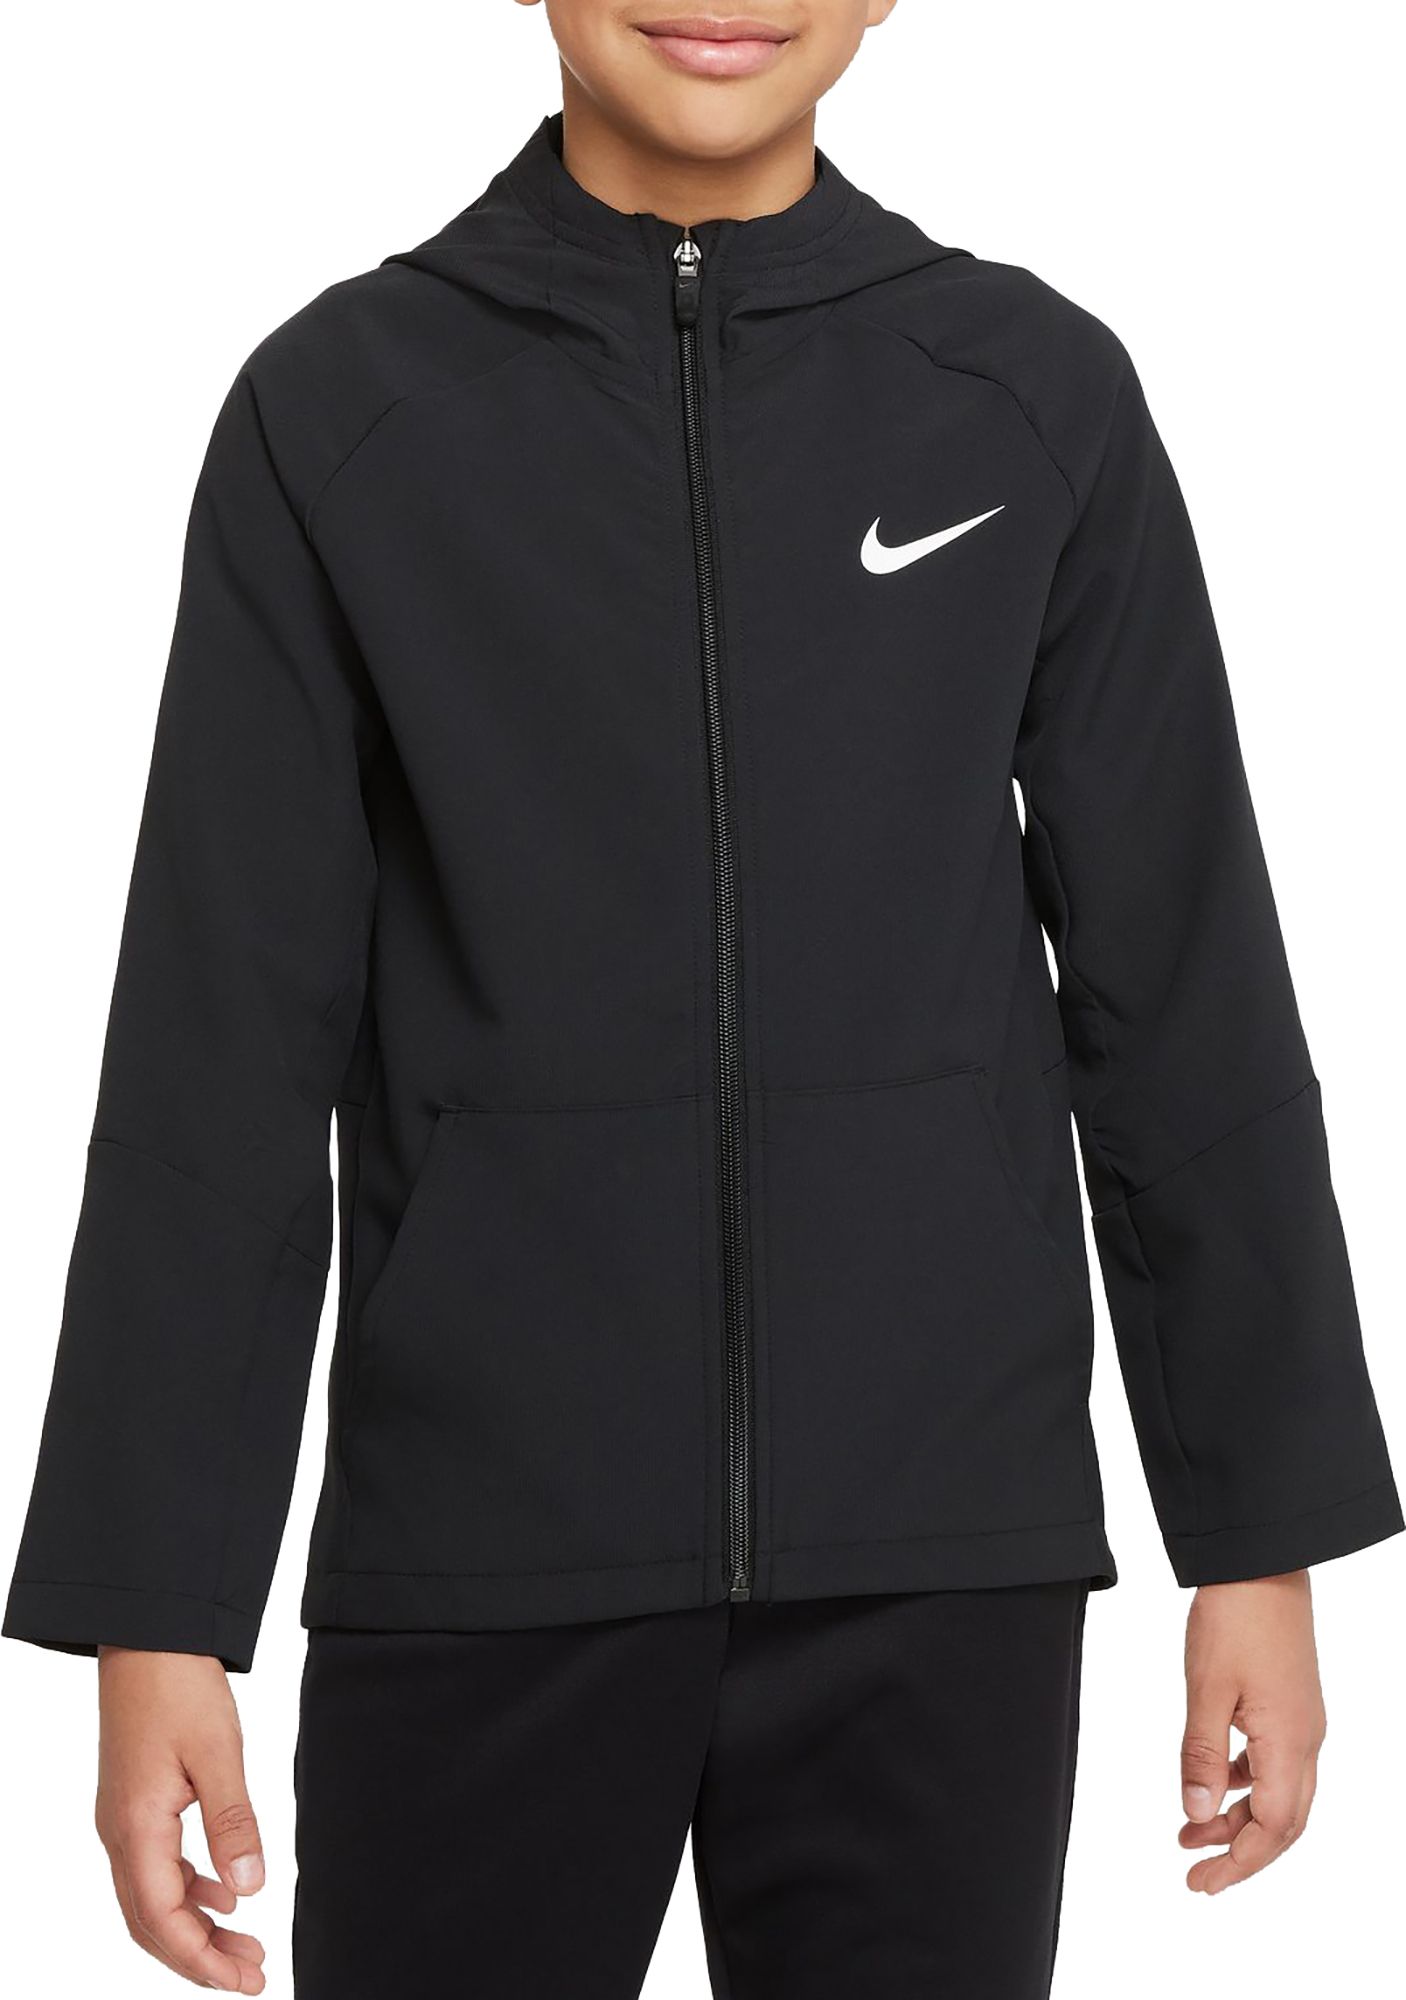 Nike Boys' Woven Training Jacket